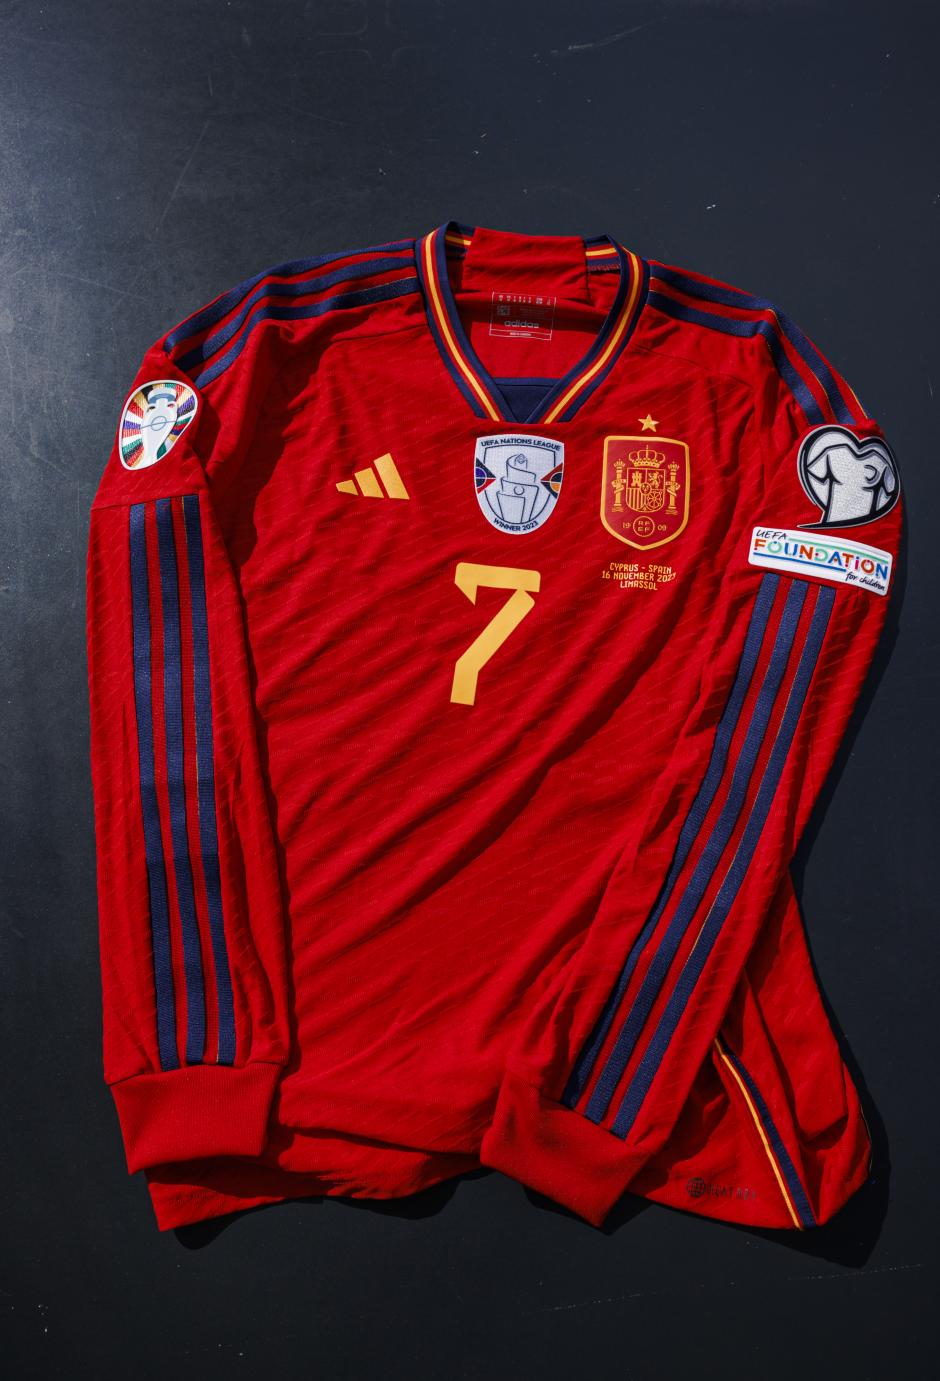 La nueva camiseta de la selección española, al completo